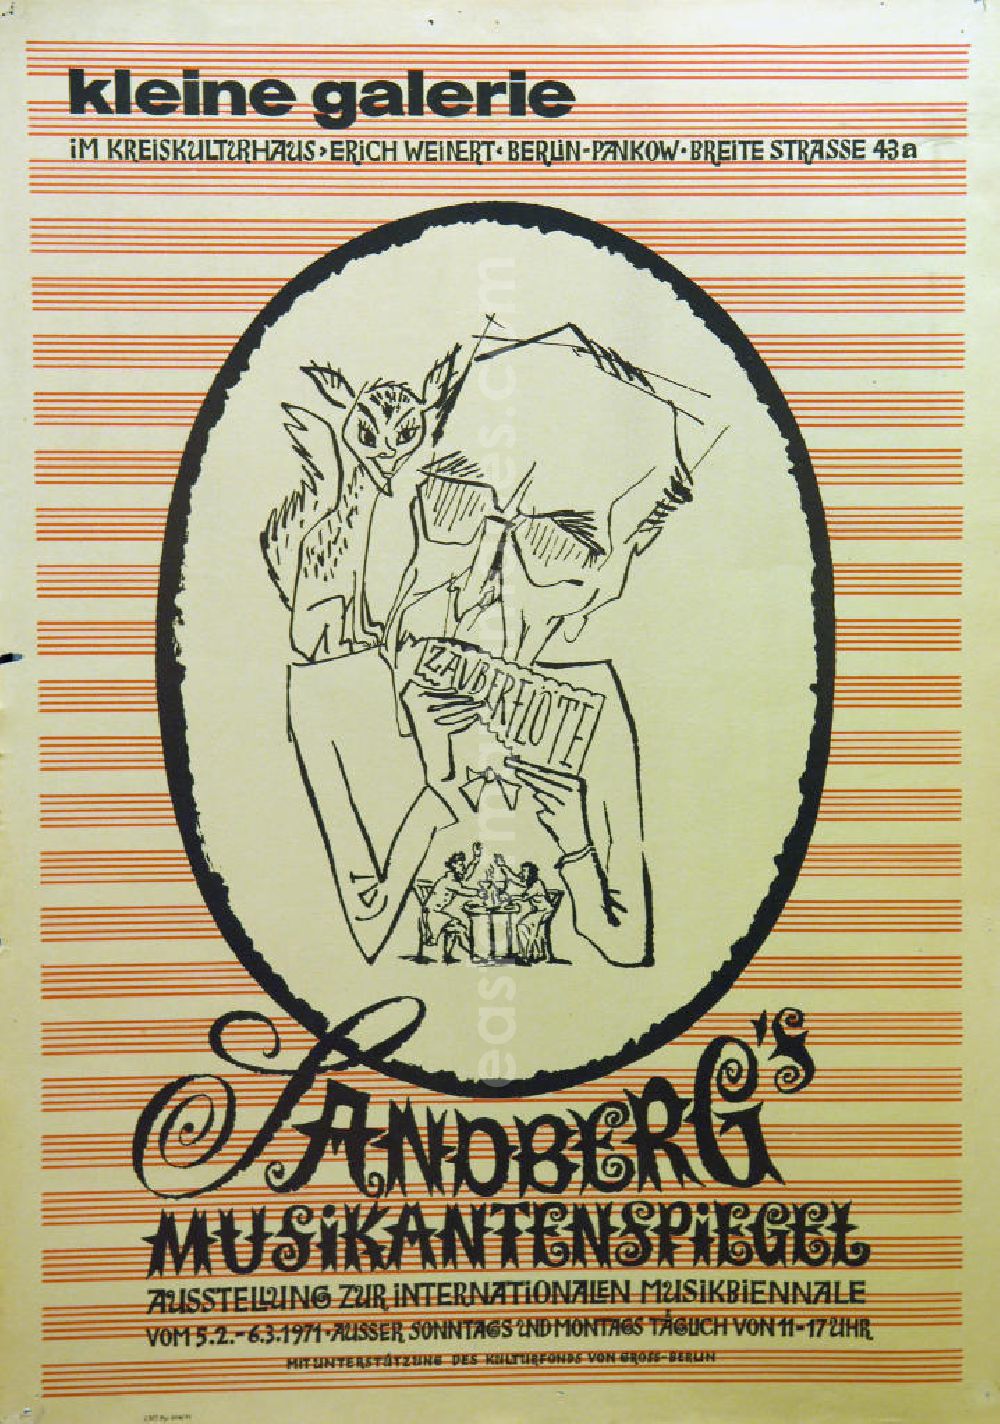 GDR photo archive: Berlin - Plakat der Ausstellung Sandberg's Musikantenspiegel über Herbert Sandberg vom 05.02.-06.03.1971 Kleine Galerie im Kreiskulturhaus, 4